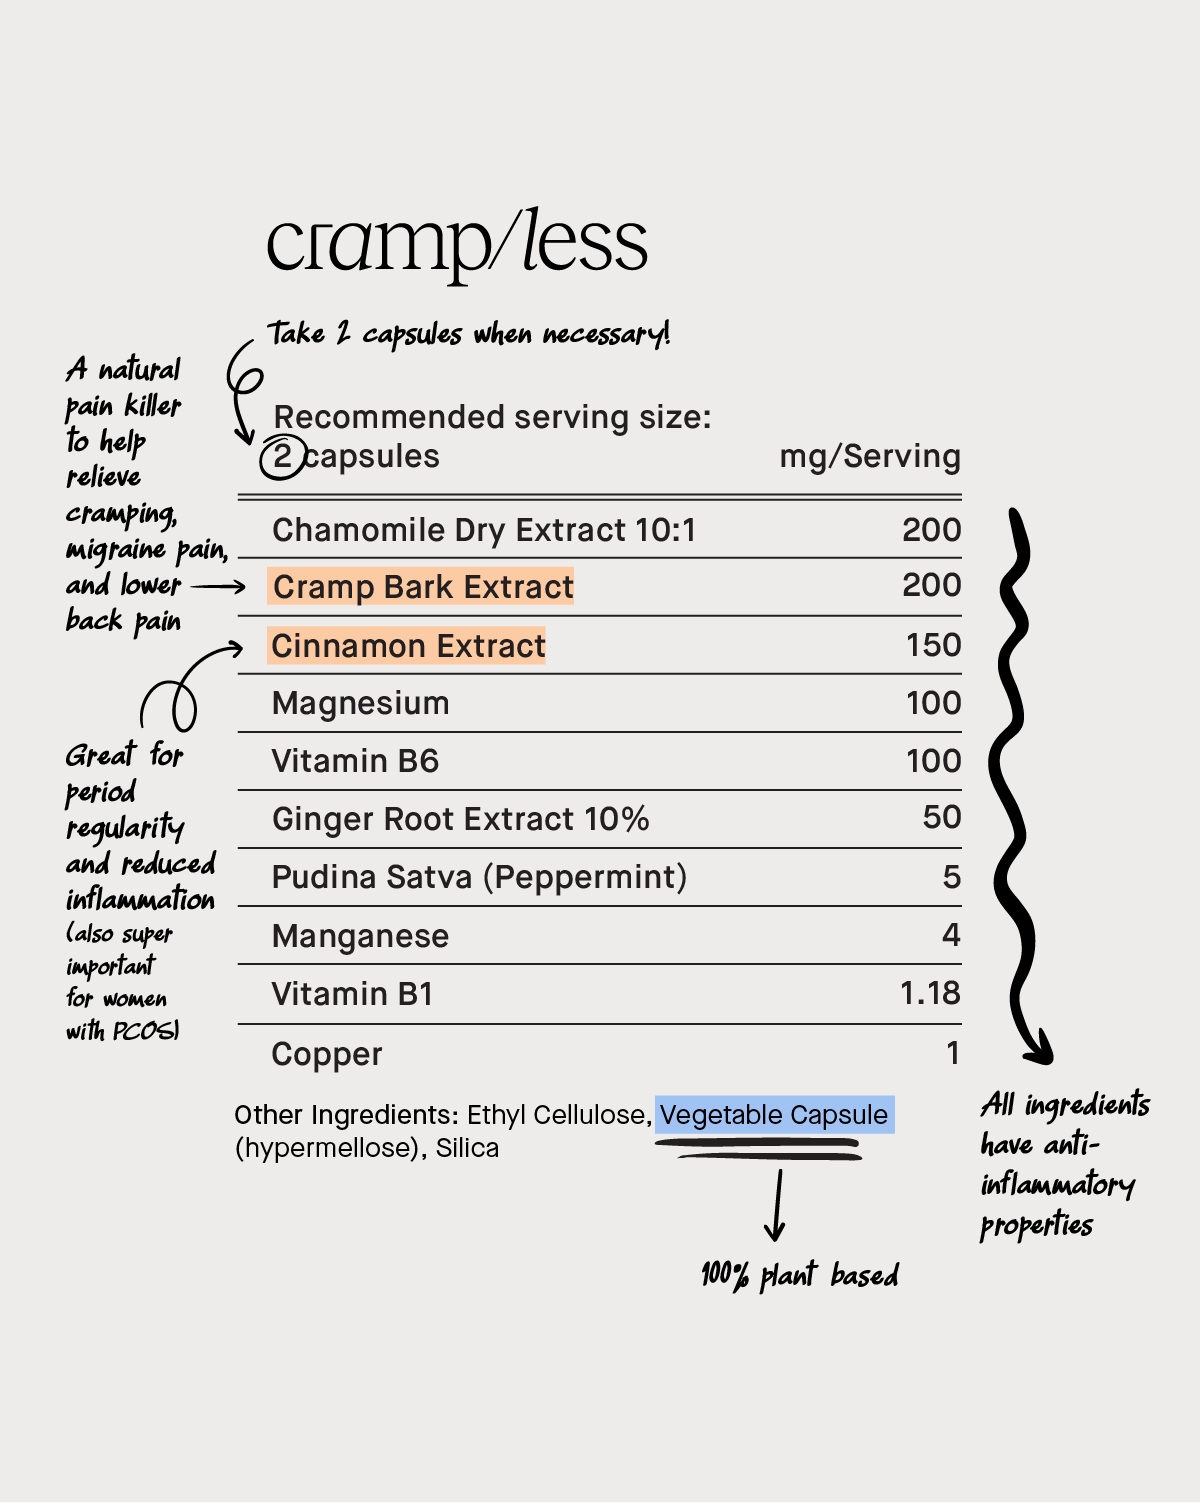 cramp/less blister pack